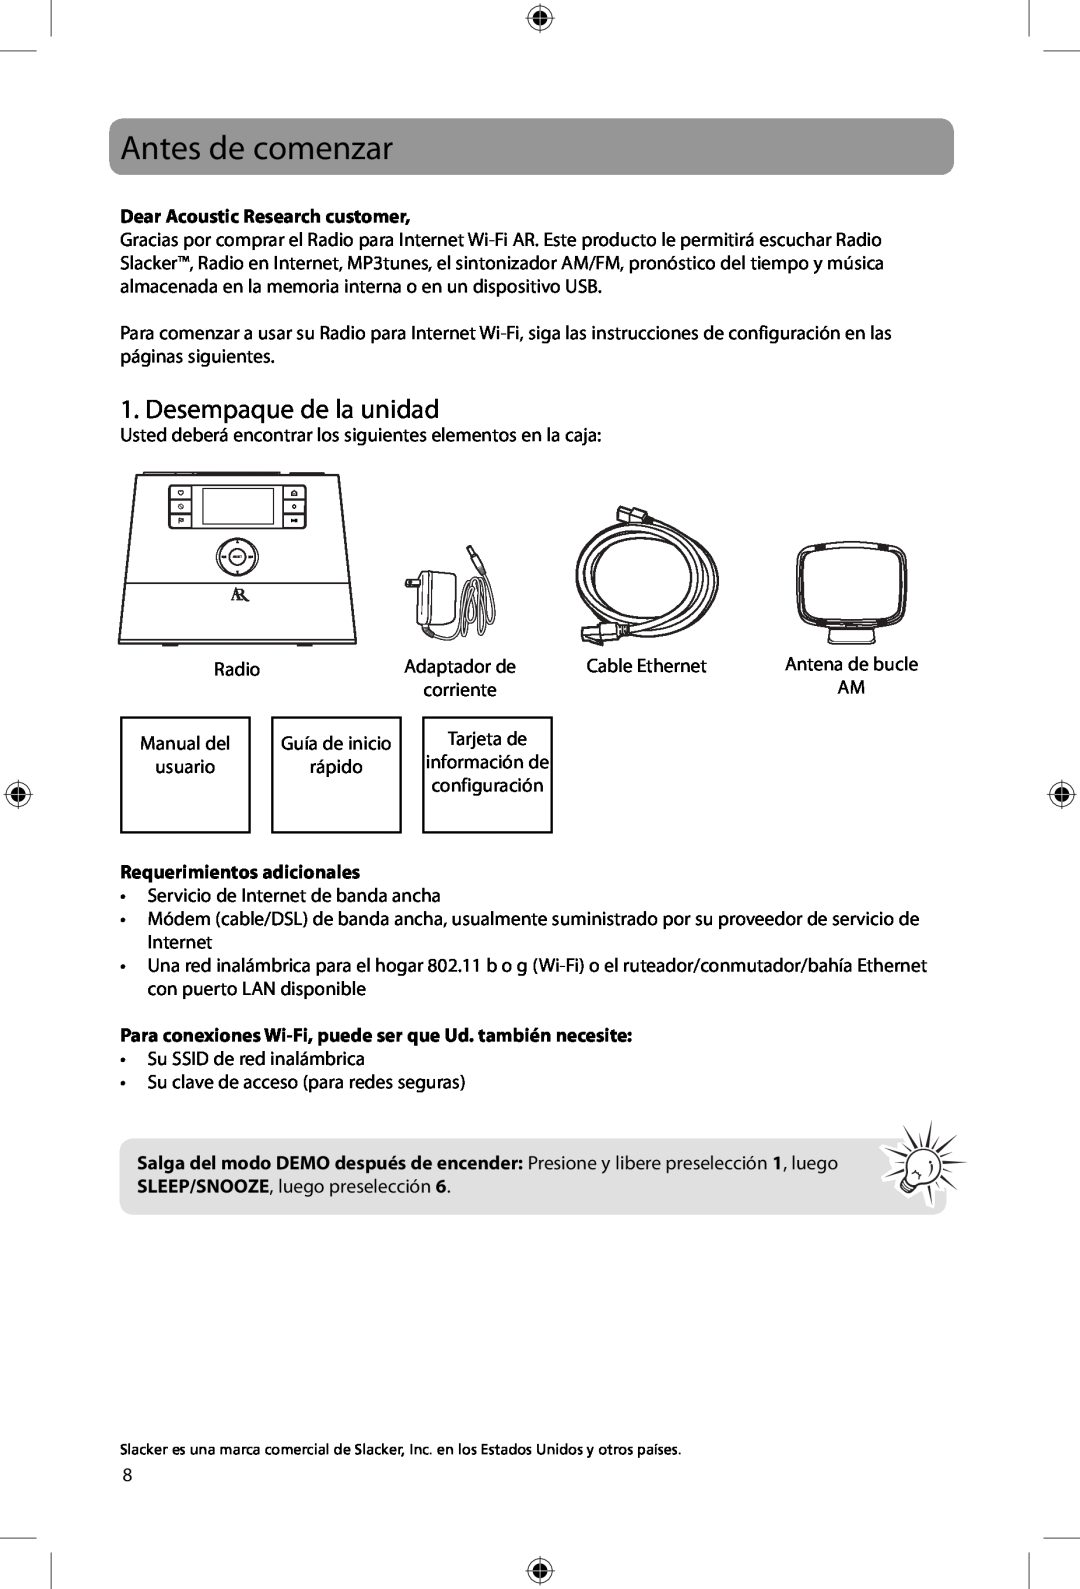 Acoustic Research ARIR200 user manual Antes de comenzar, Desempaque de la unidad, Dear Acoustic Research customer 